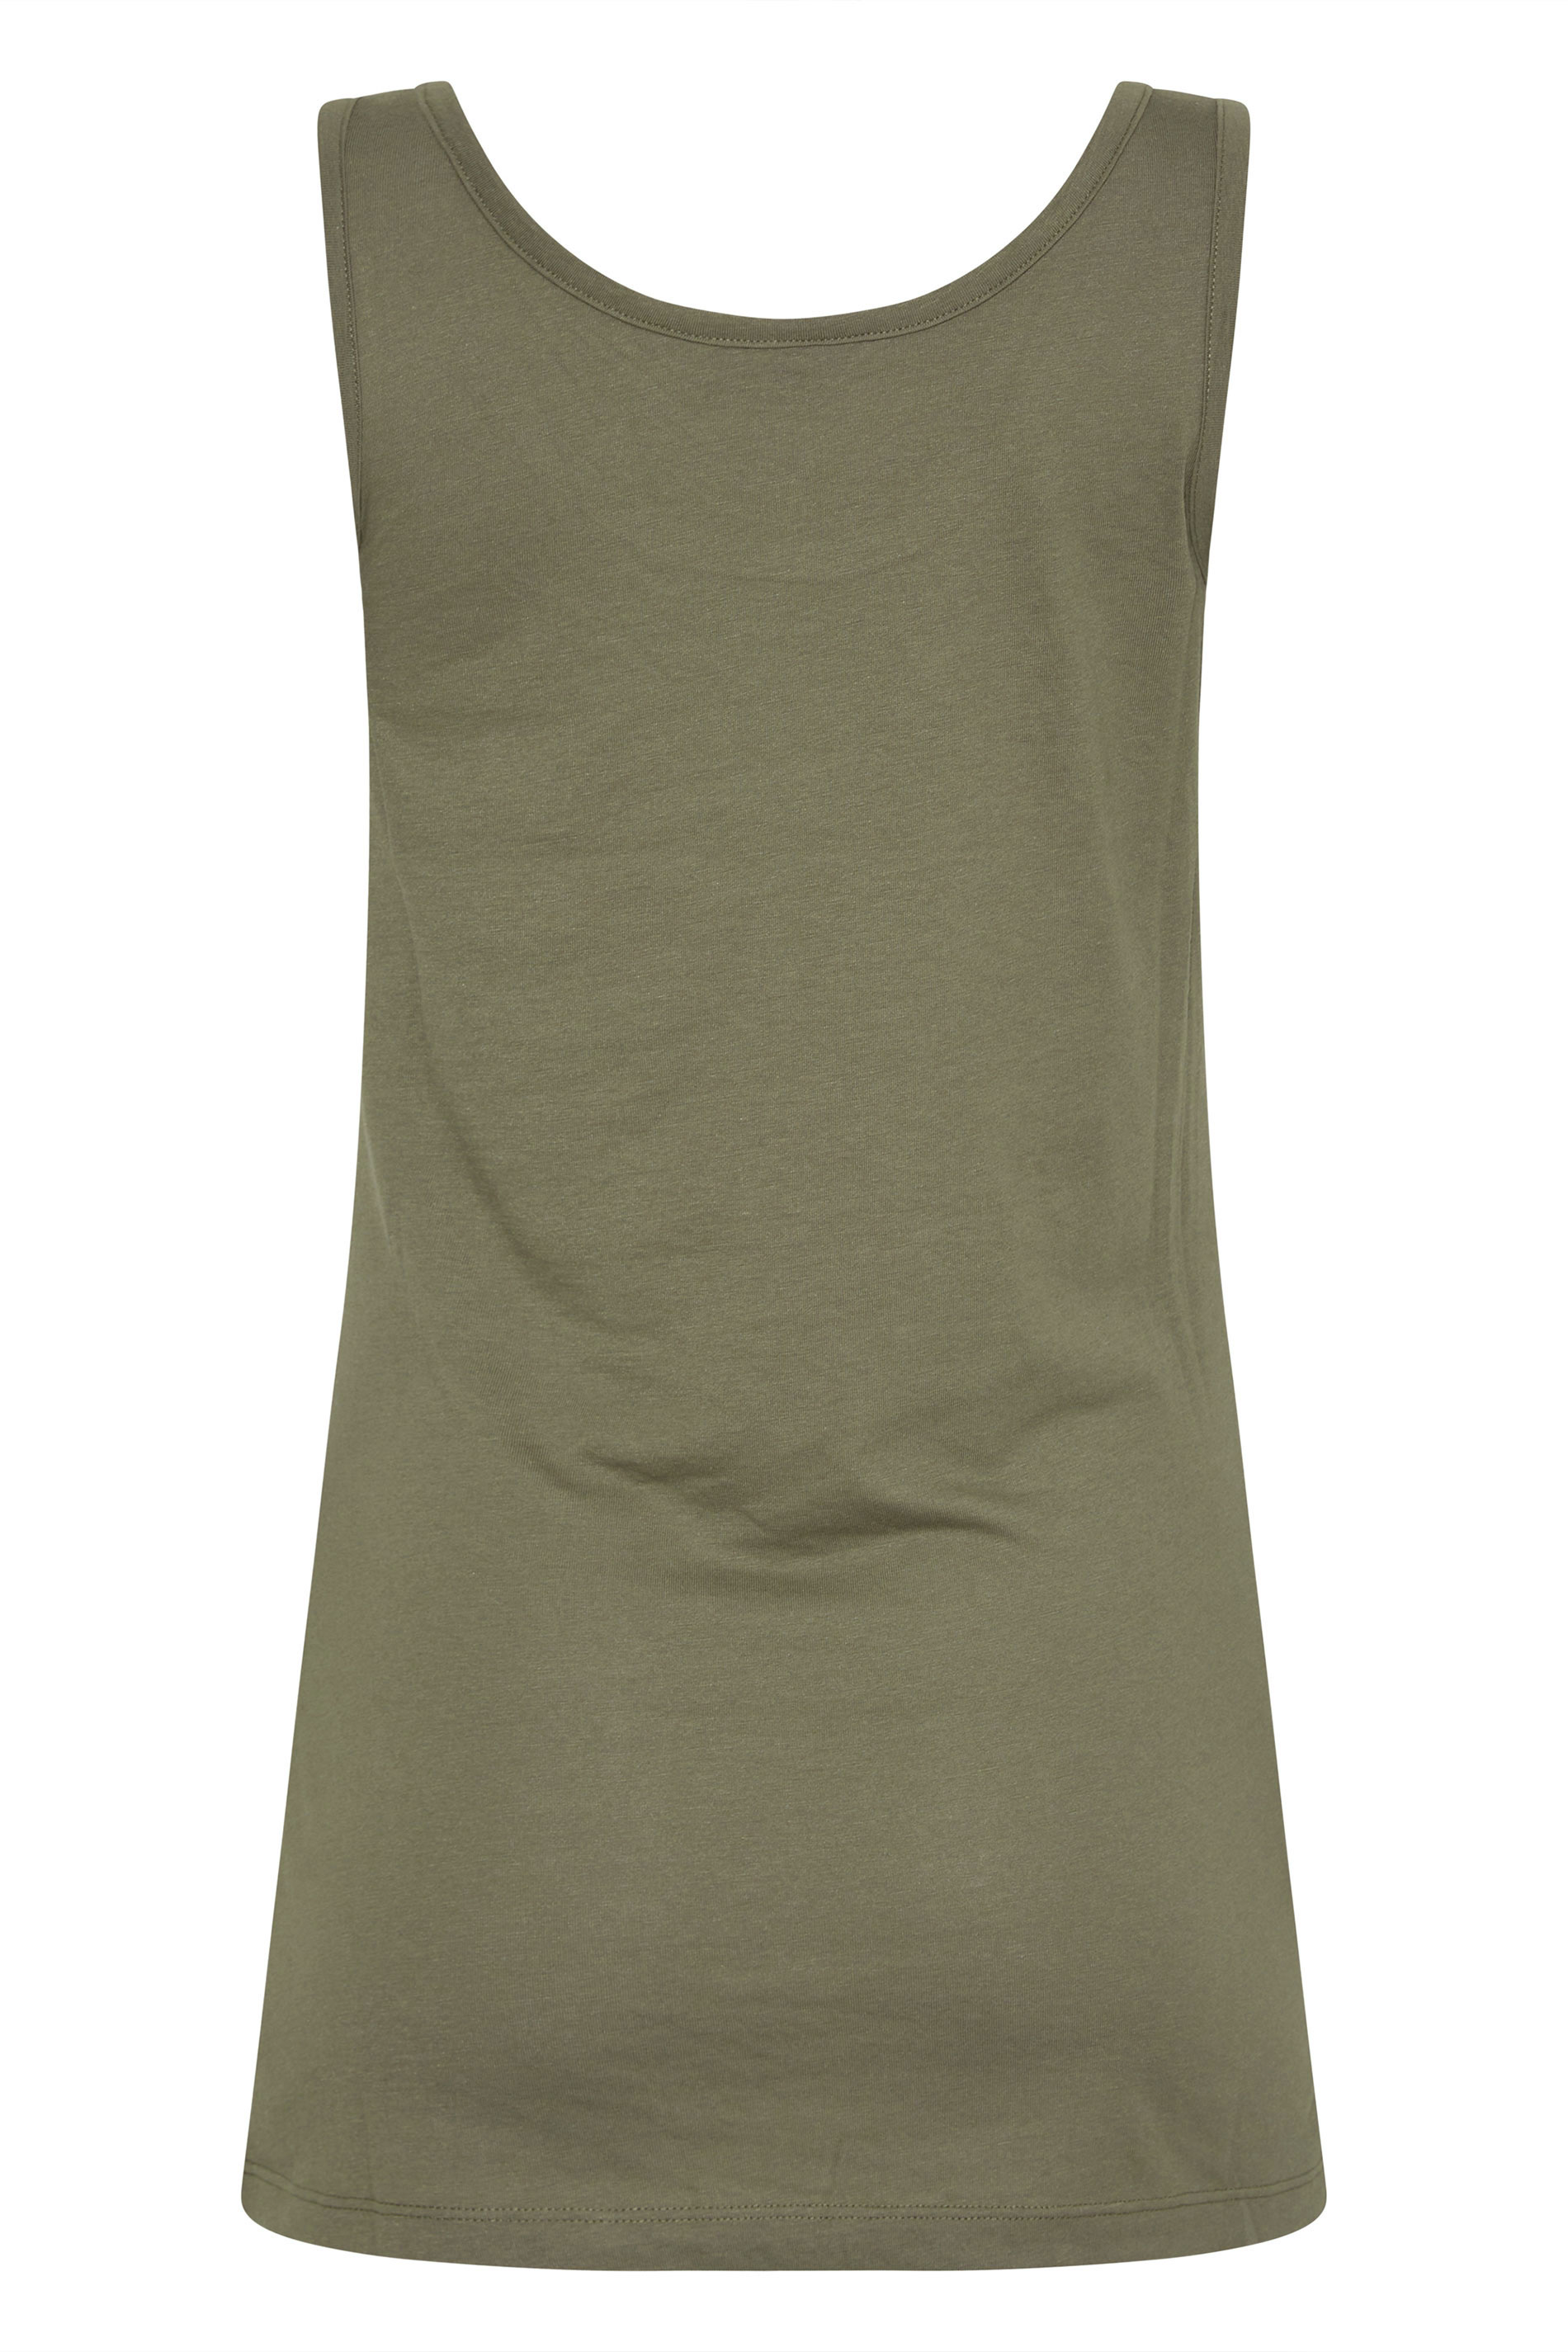 LTS Tall Women's Khaki Green Vest Top | Long Tall Sally